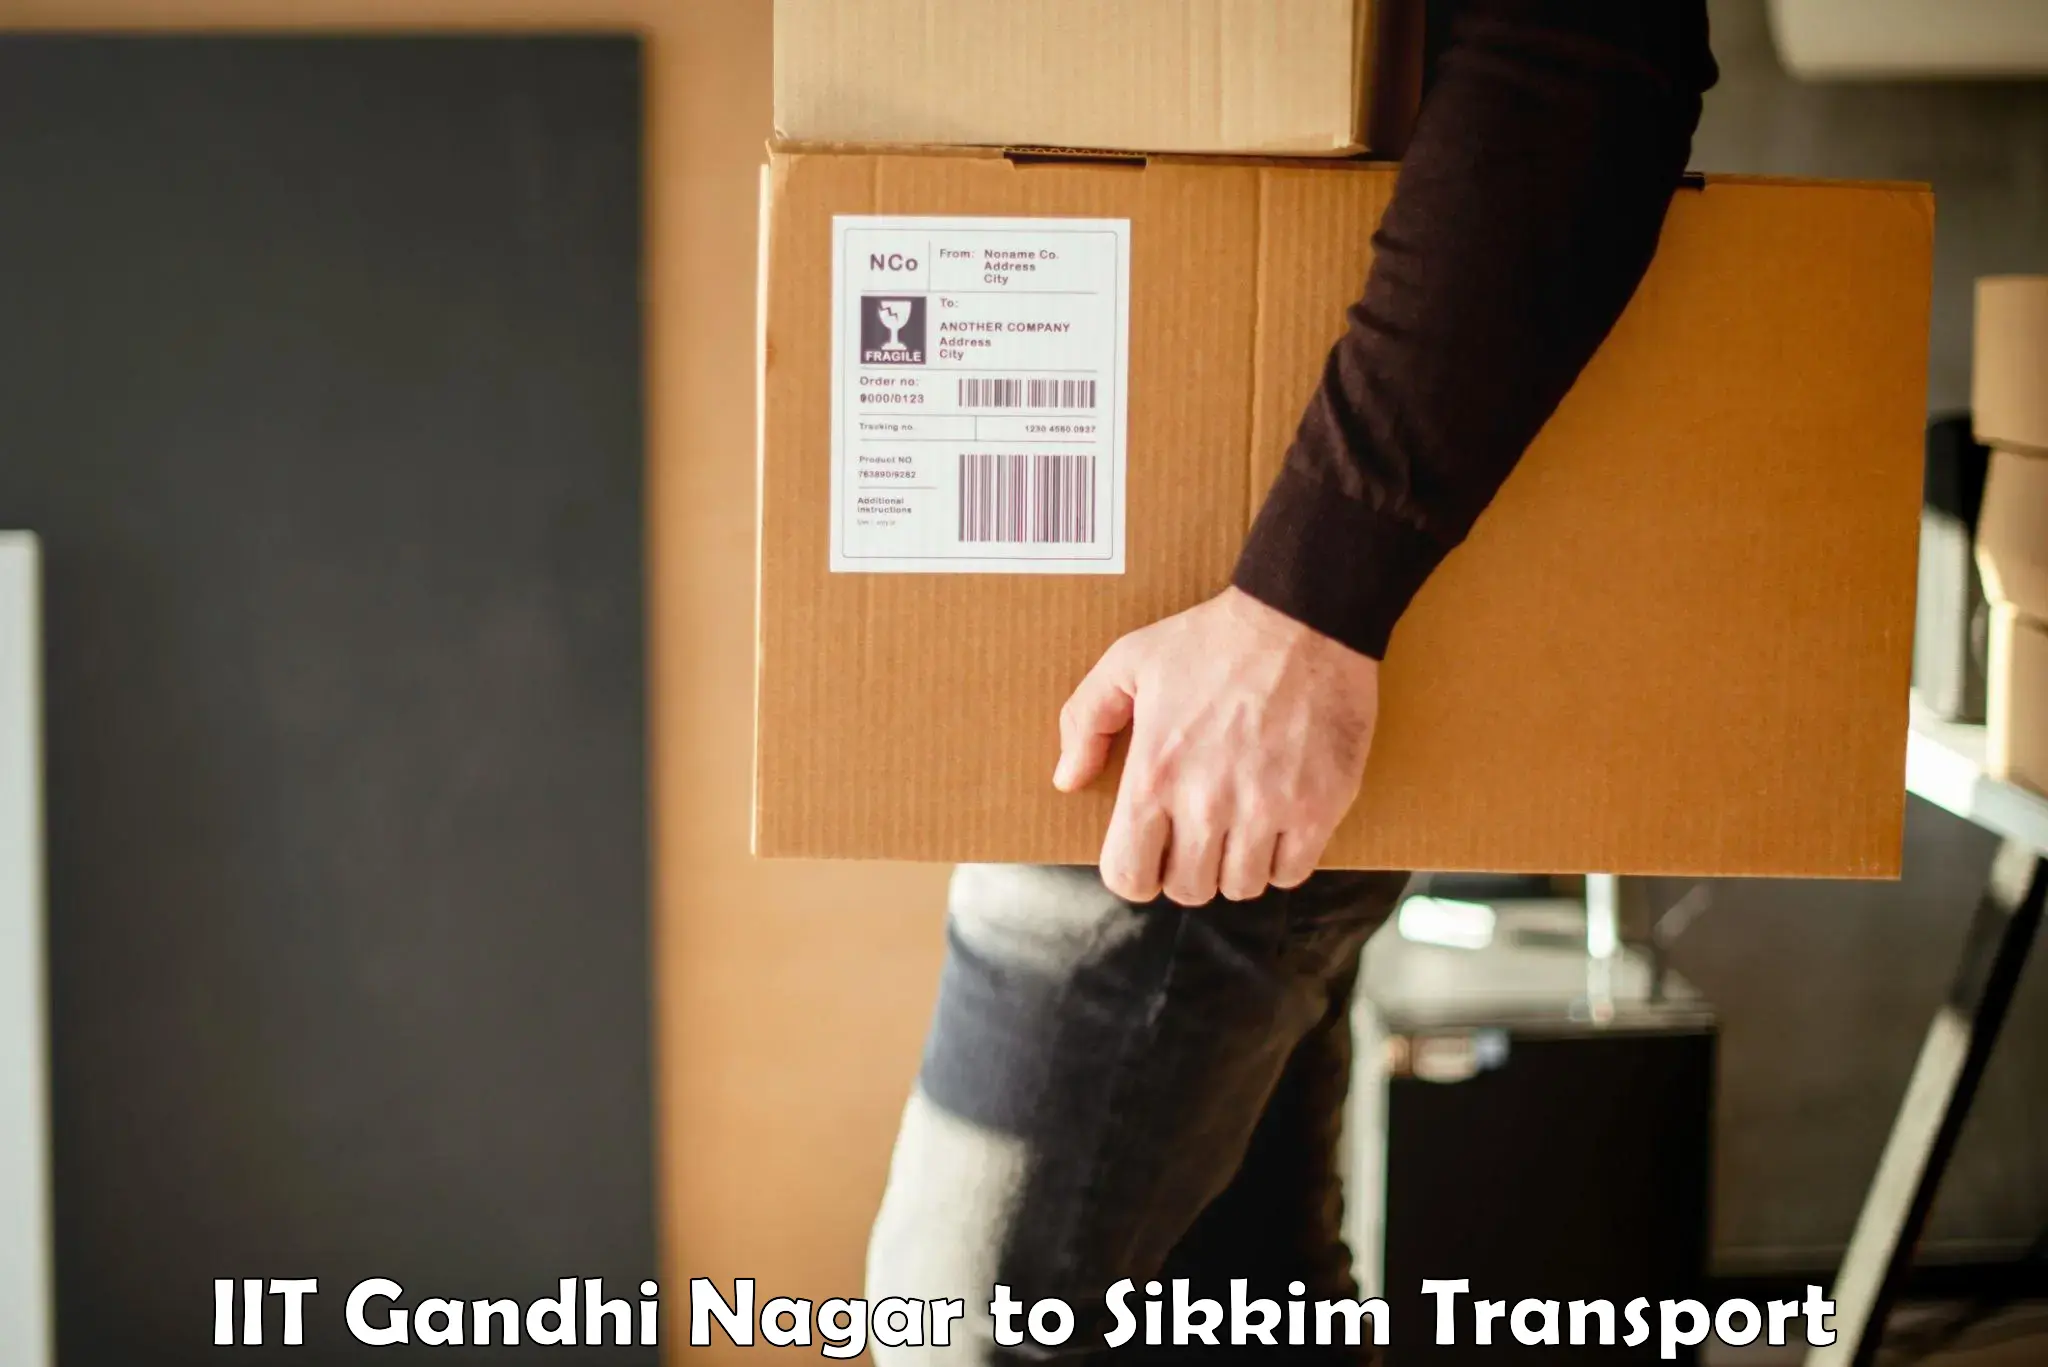 Daily transport service in IIT Gandhi Nagar to Namchi